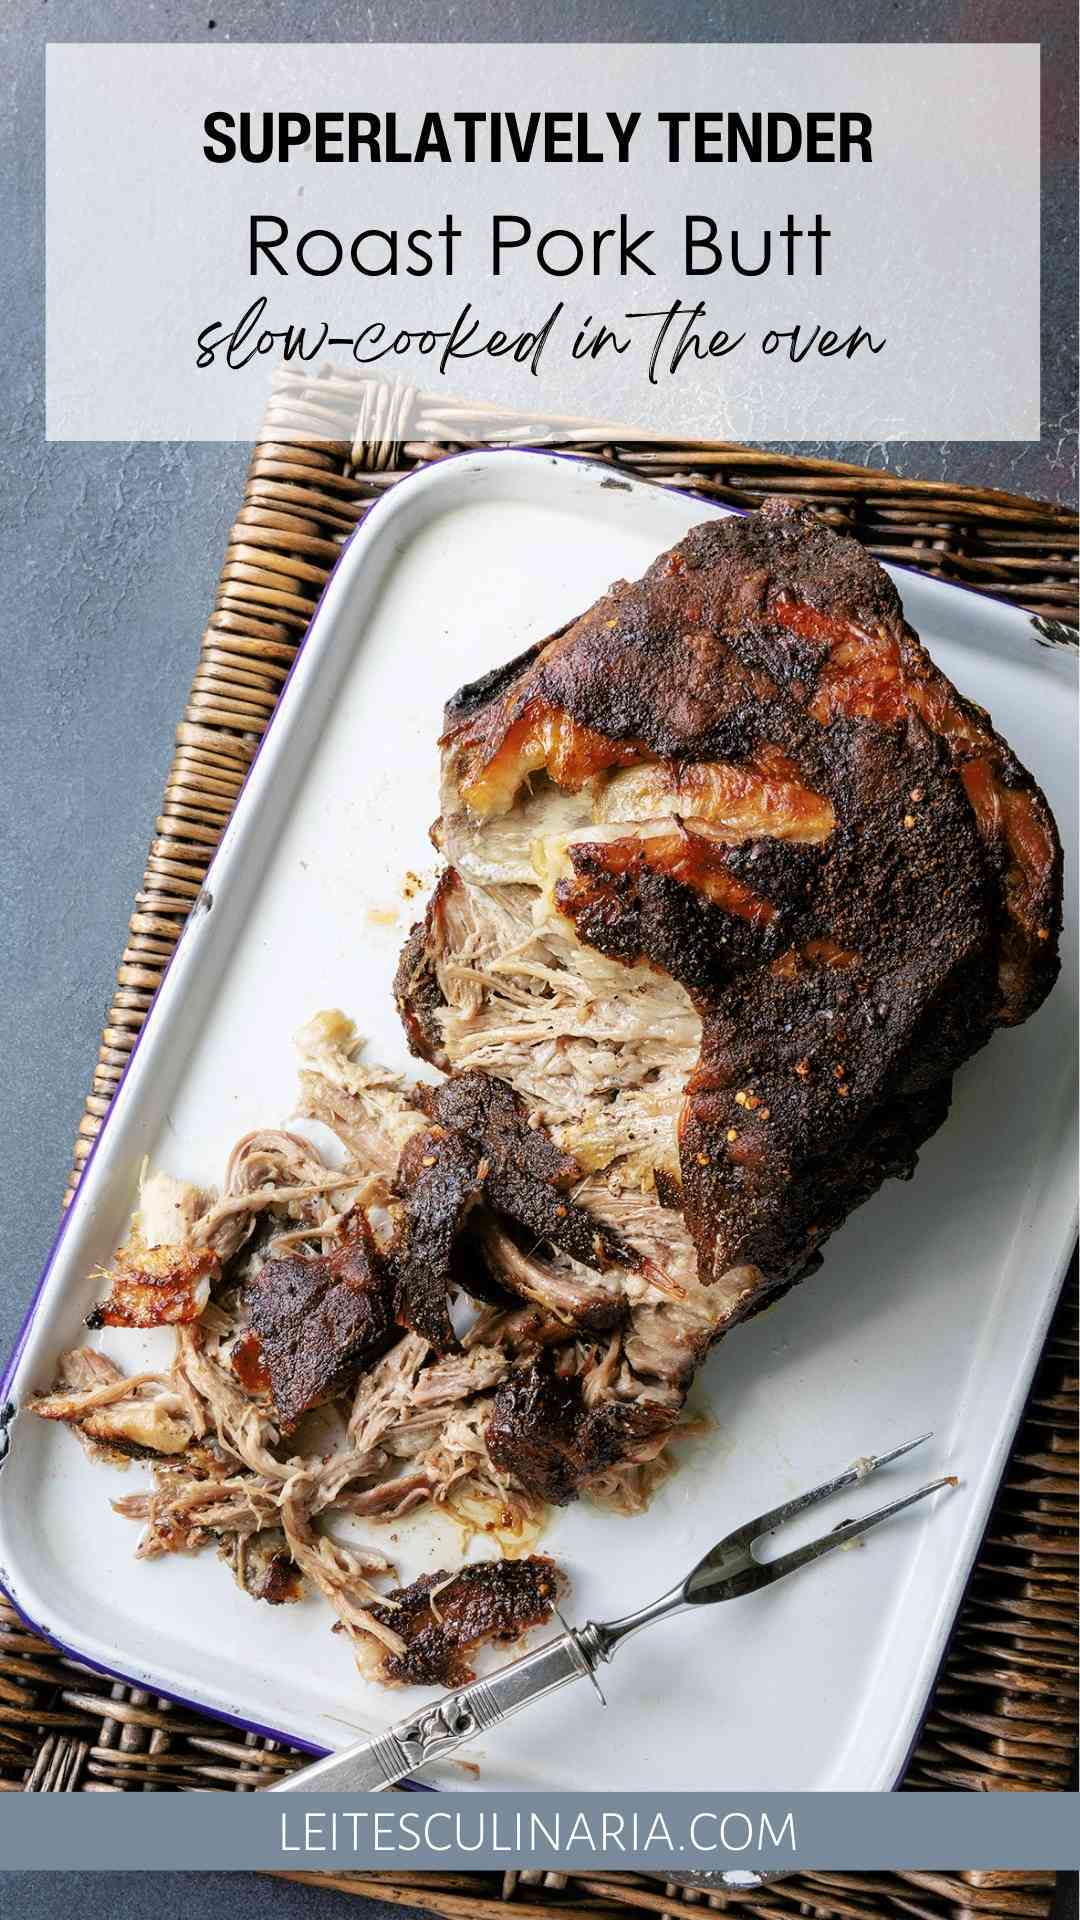 A partially shredded roast pork butt on a white tray.